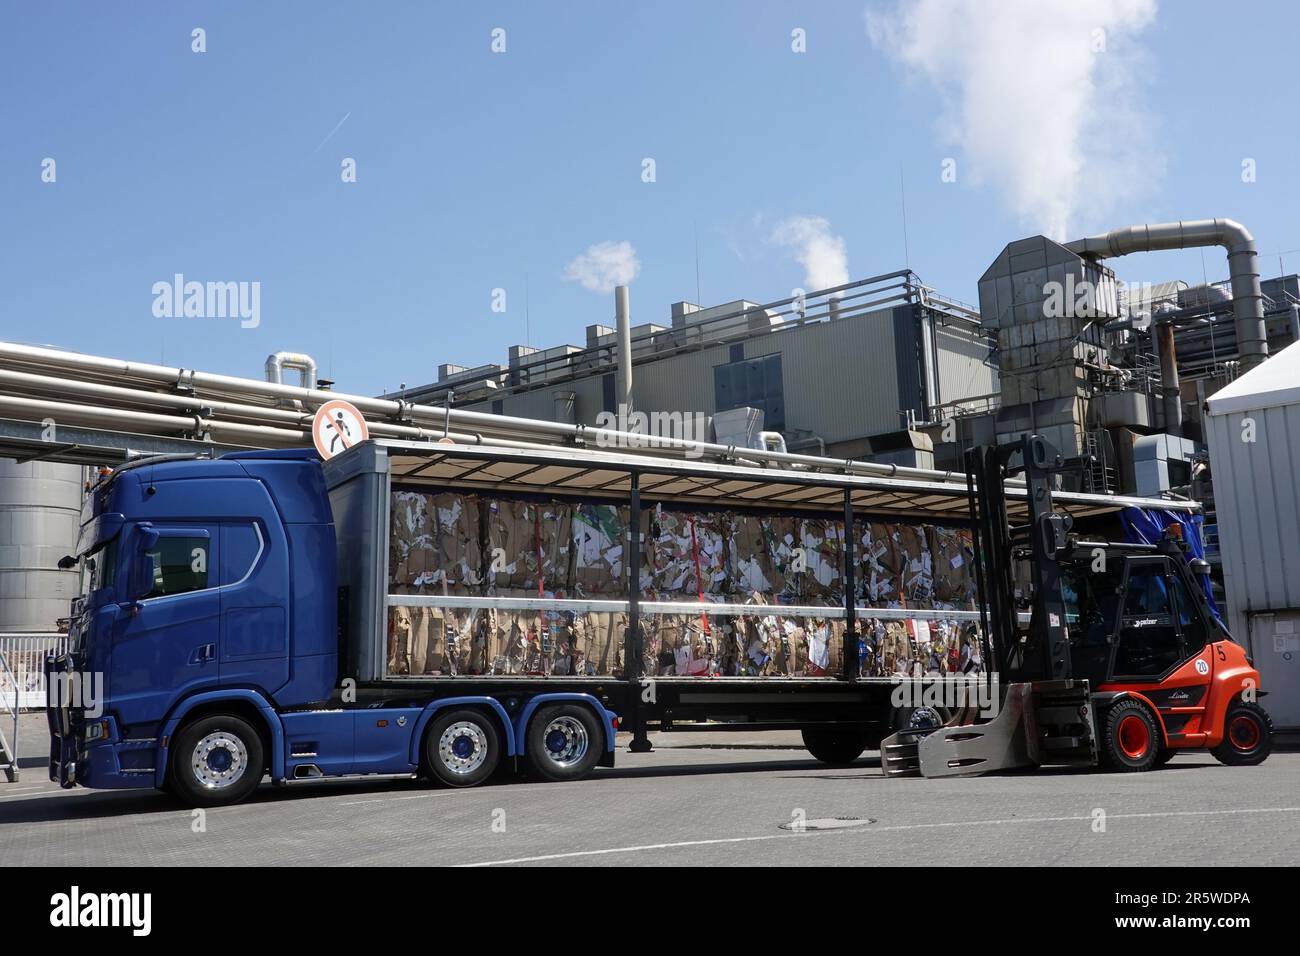 Smurfit Kappa Papierfabrik Zülpich - Lastwagen beladen mit Altpapier-Ballen, Nordrhein-Westfalen, Deutschland Stock Photo